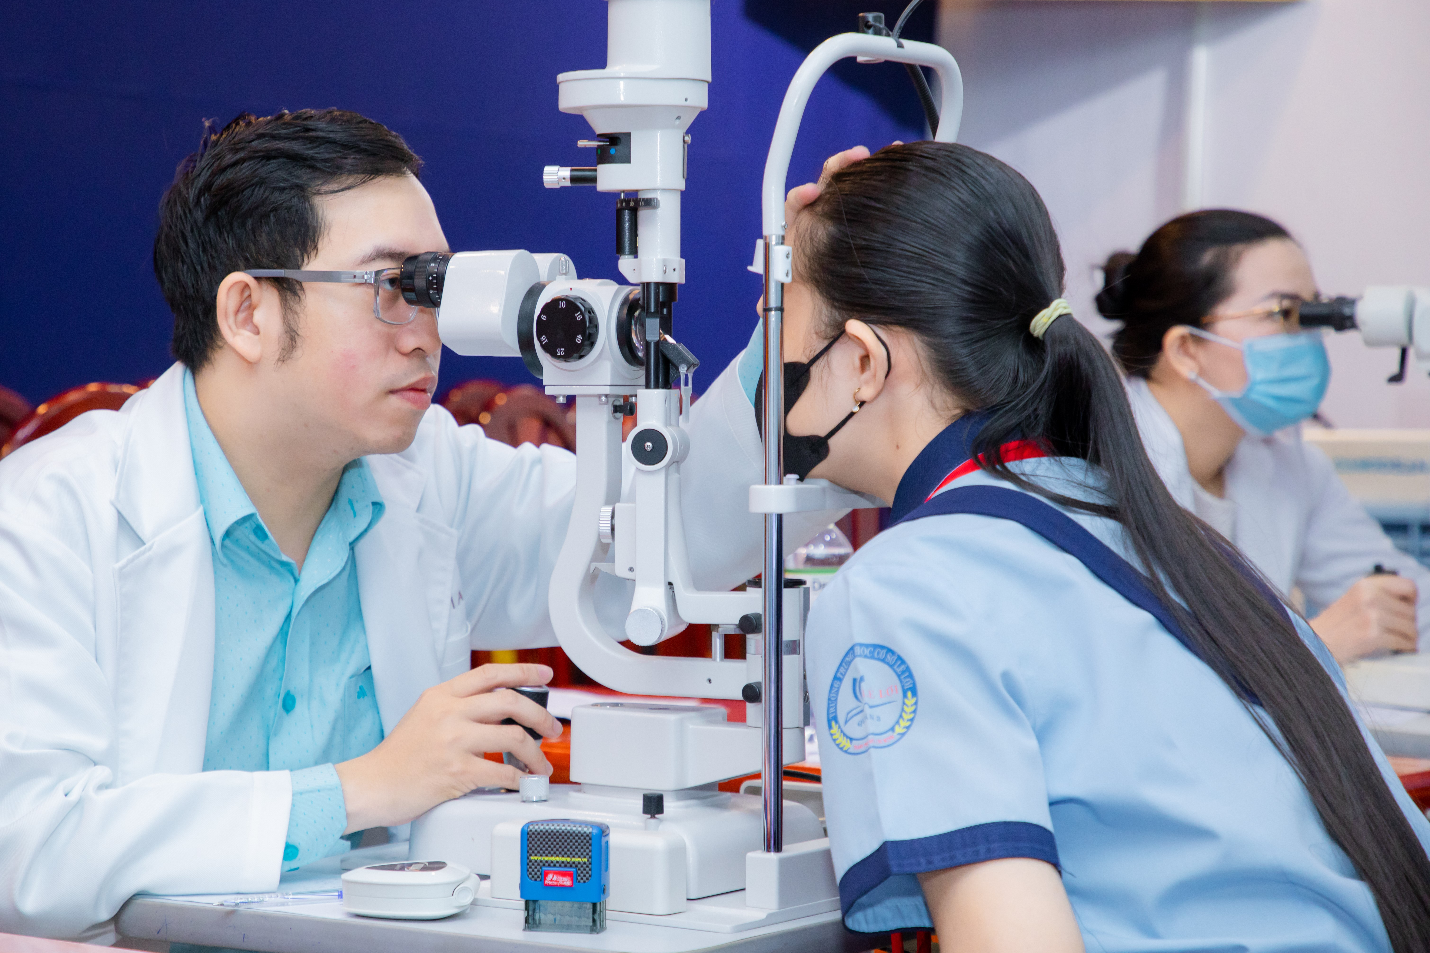 Prima Saigon gives free eye examinations to students